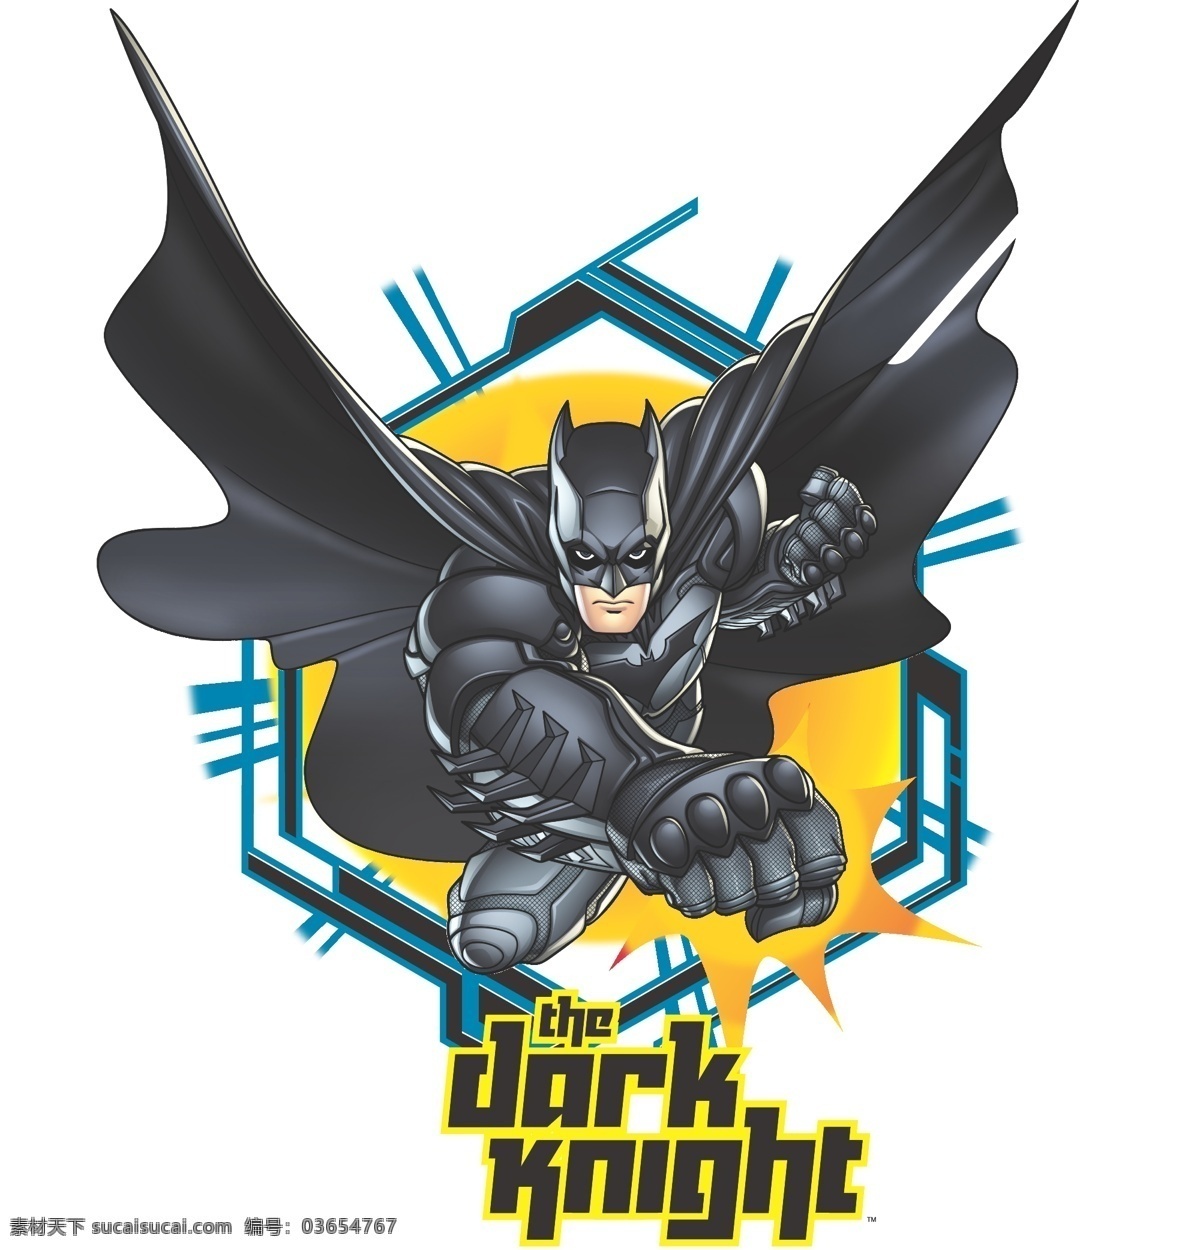 蝙蝠侠 batman 黑暗骑士 华纳 dc漫画 超级英雄 英雄联盟 卡通形象 其他人物 矢量人物 矢量